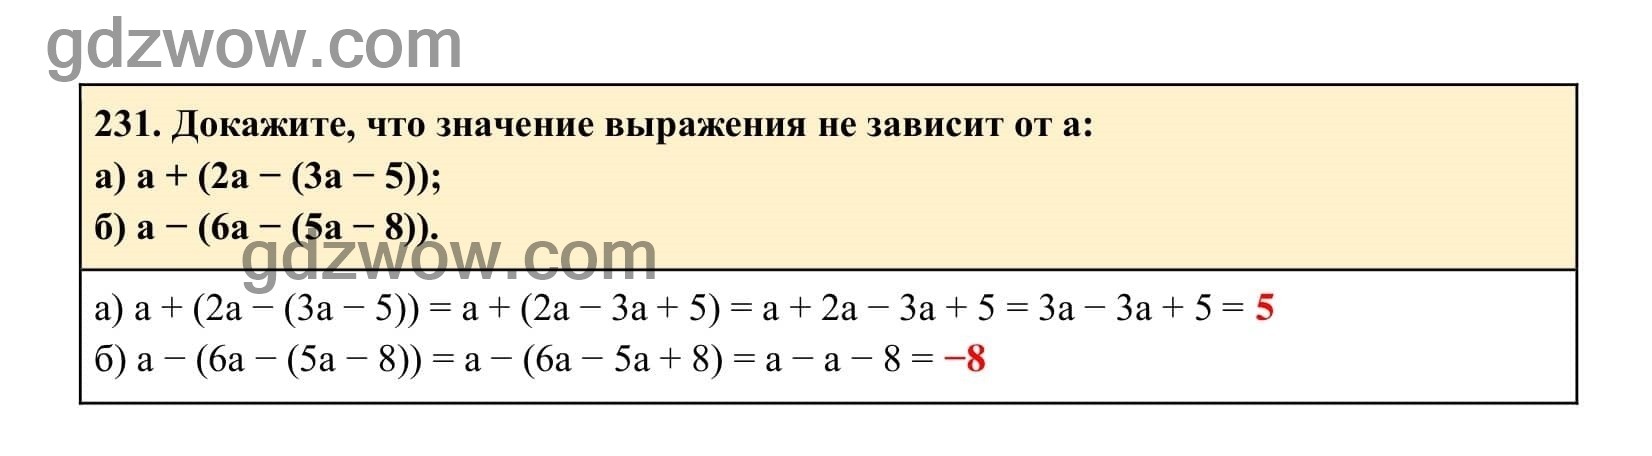 Упражнение 231 - ГДЗ по Алгебре 7 класс Учебник Макарычев (решебник) - GDZwow